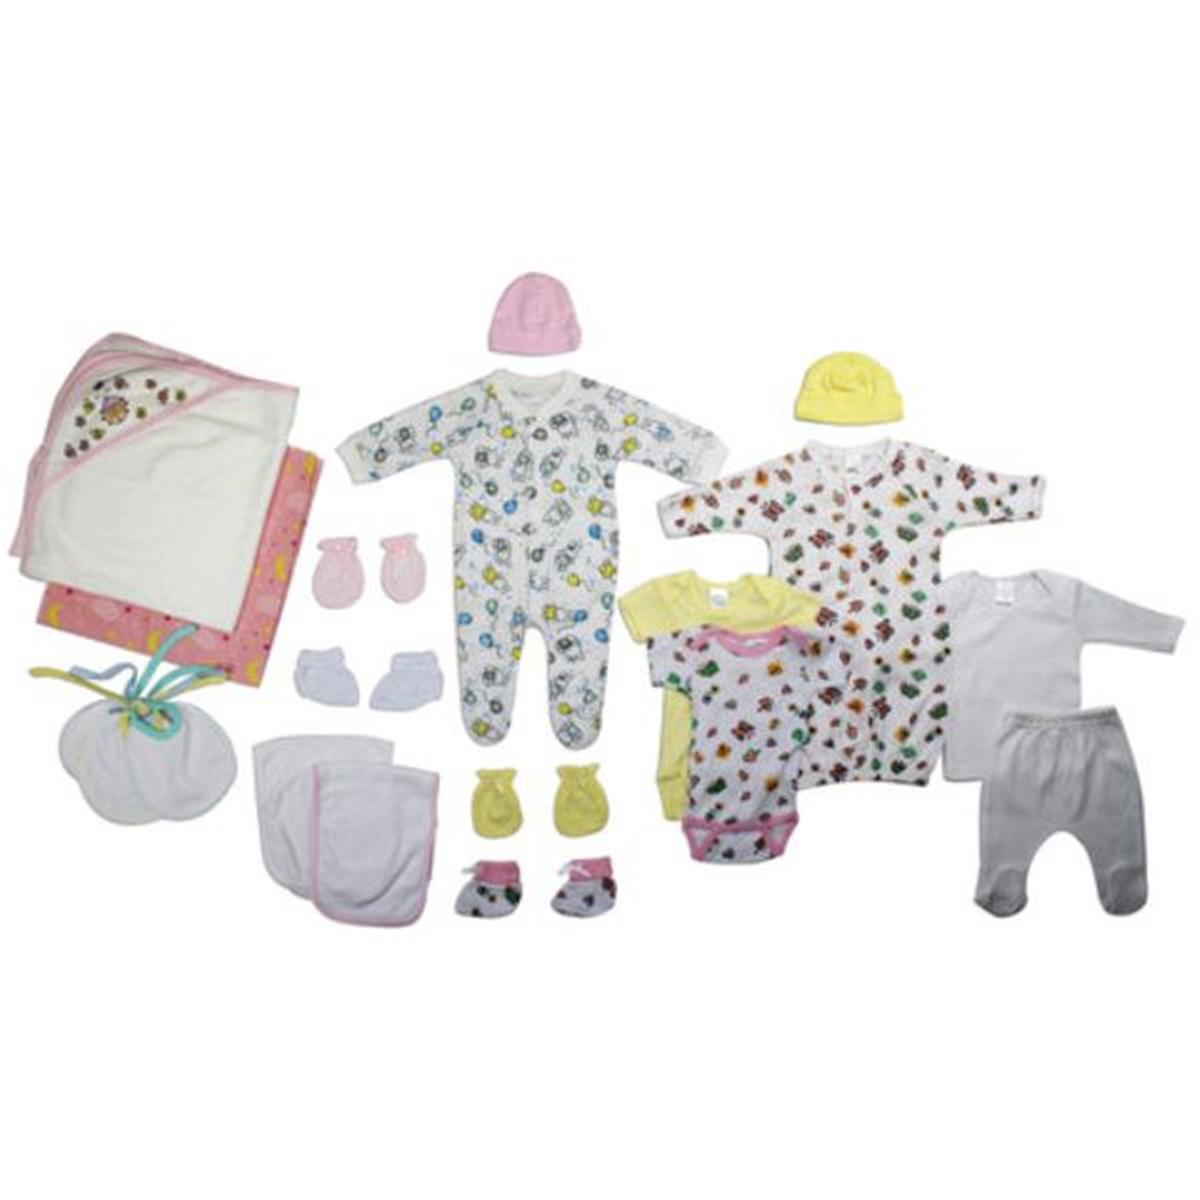 Bambini LS-0029 Newborn Baby Girl Layette Baby Shower Gift Set&#44; White & Pink - Newborn